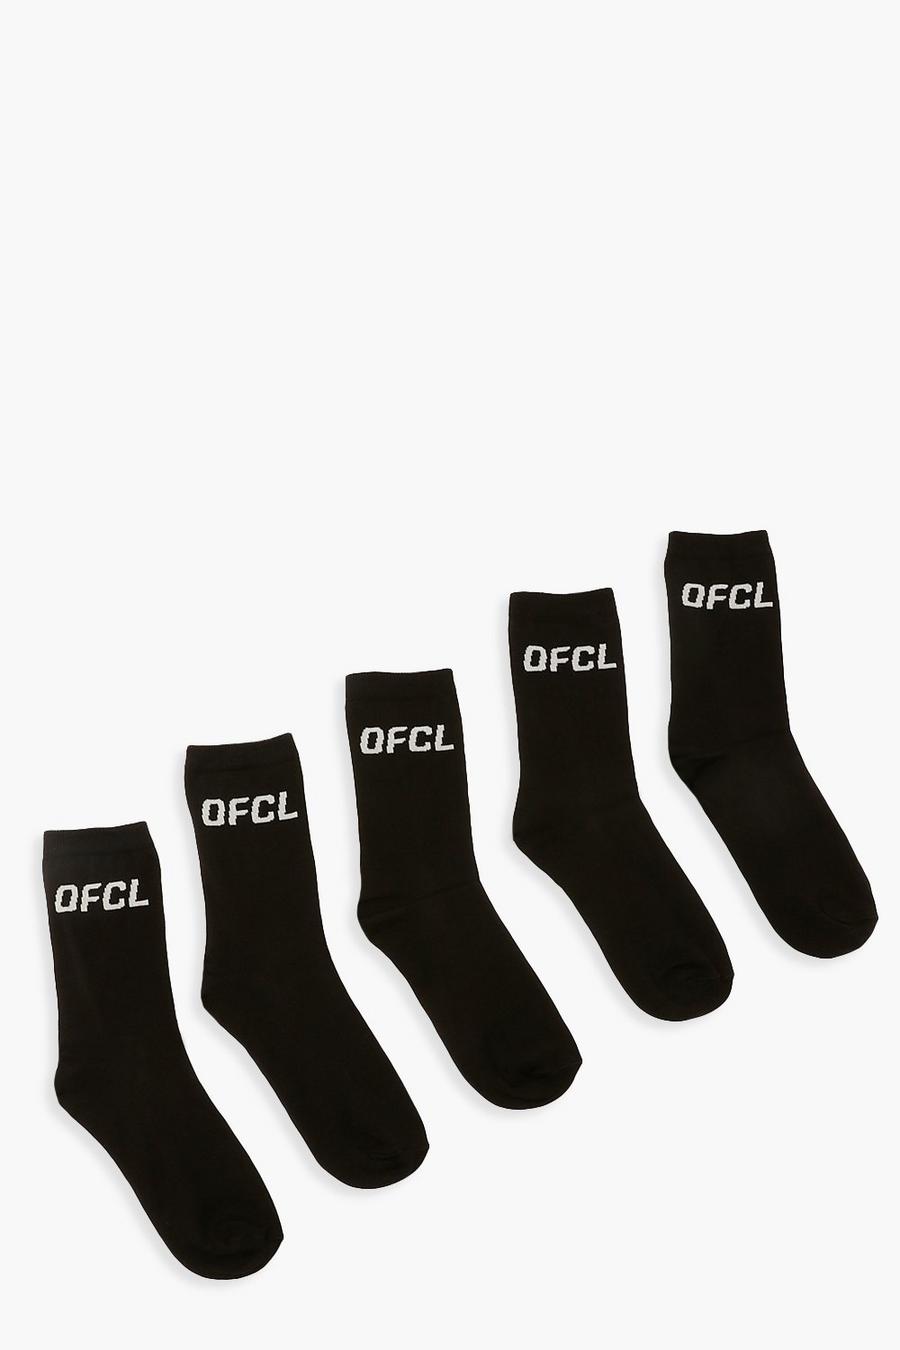 Black Ofcl Sports Socks 5 Pack image number 1